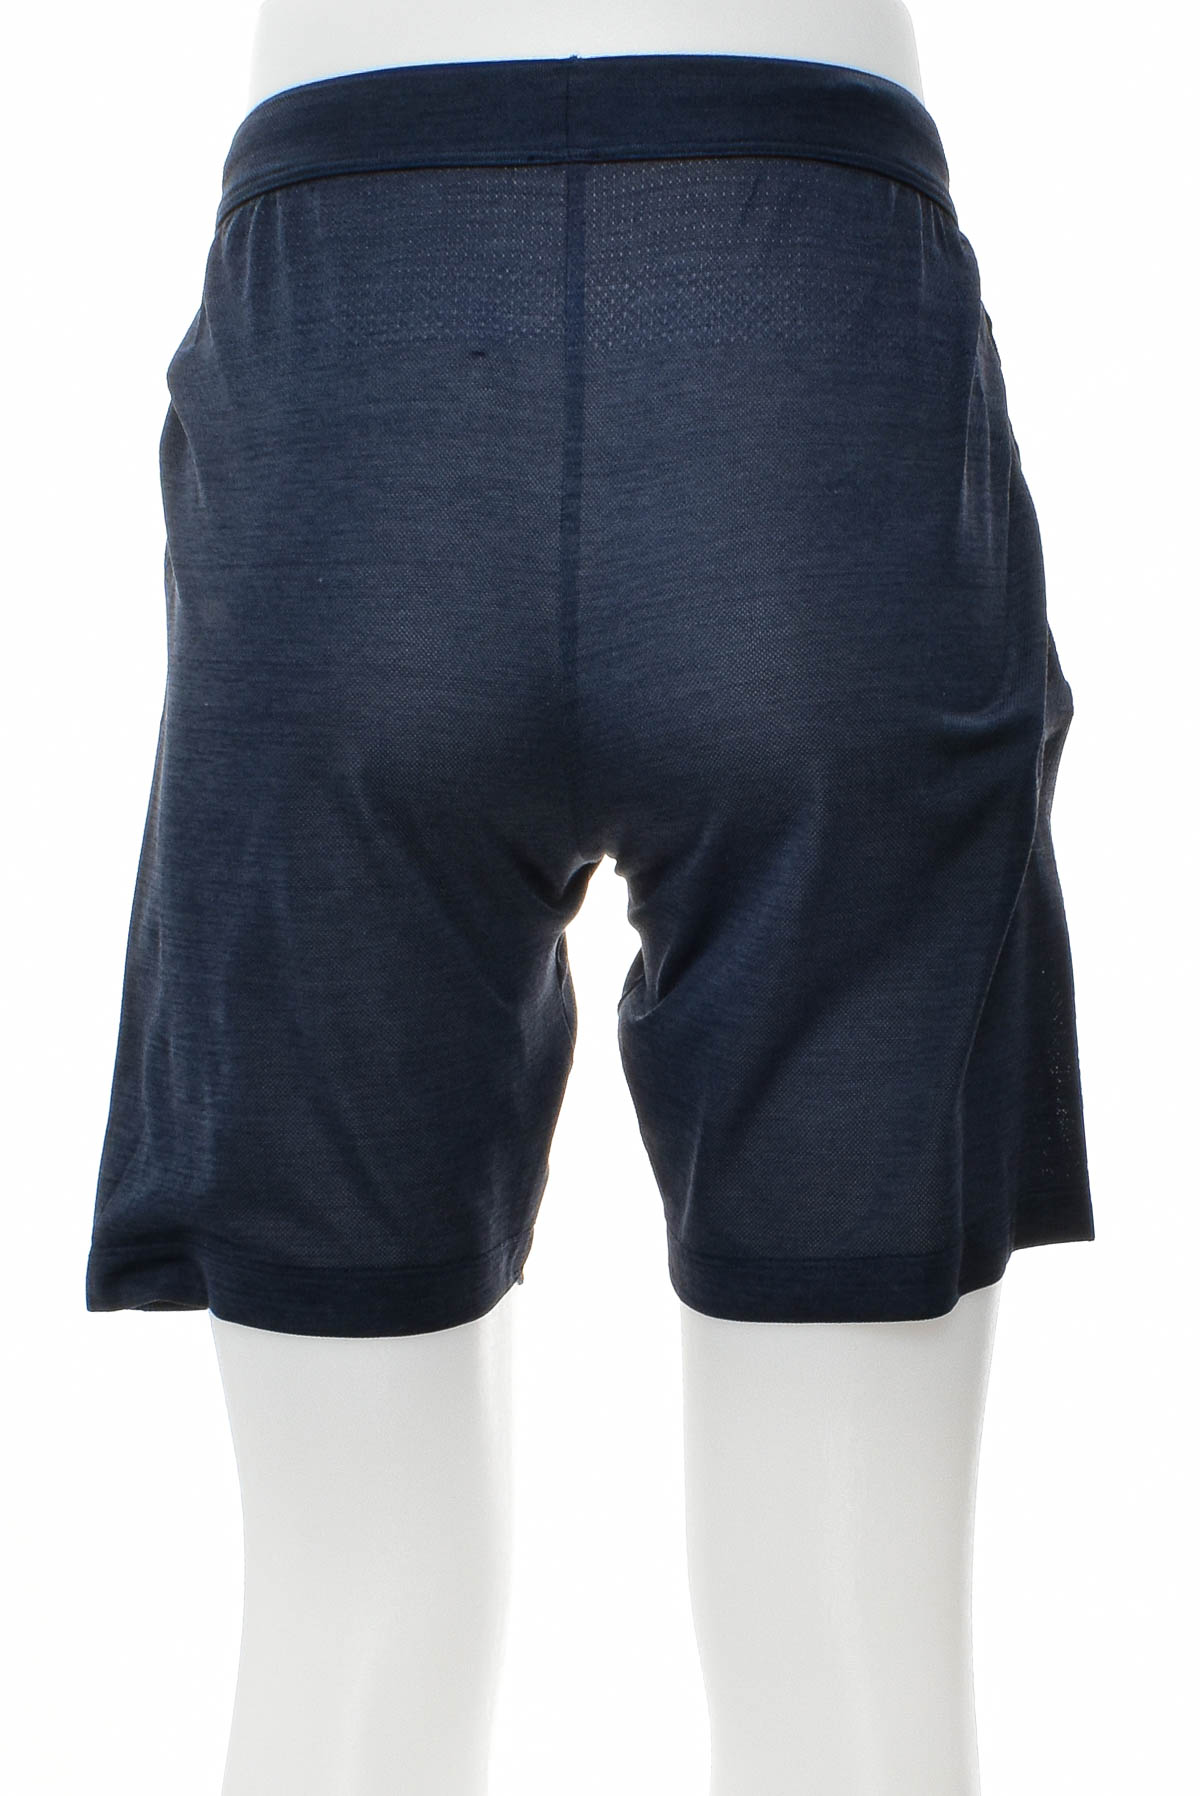 Men's shorts - UNIQLO - 1